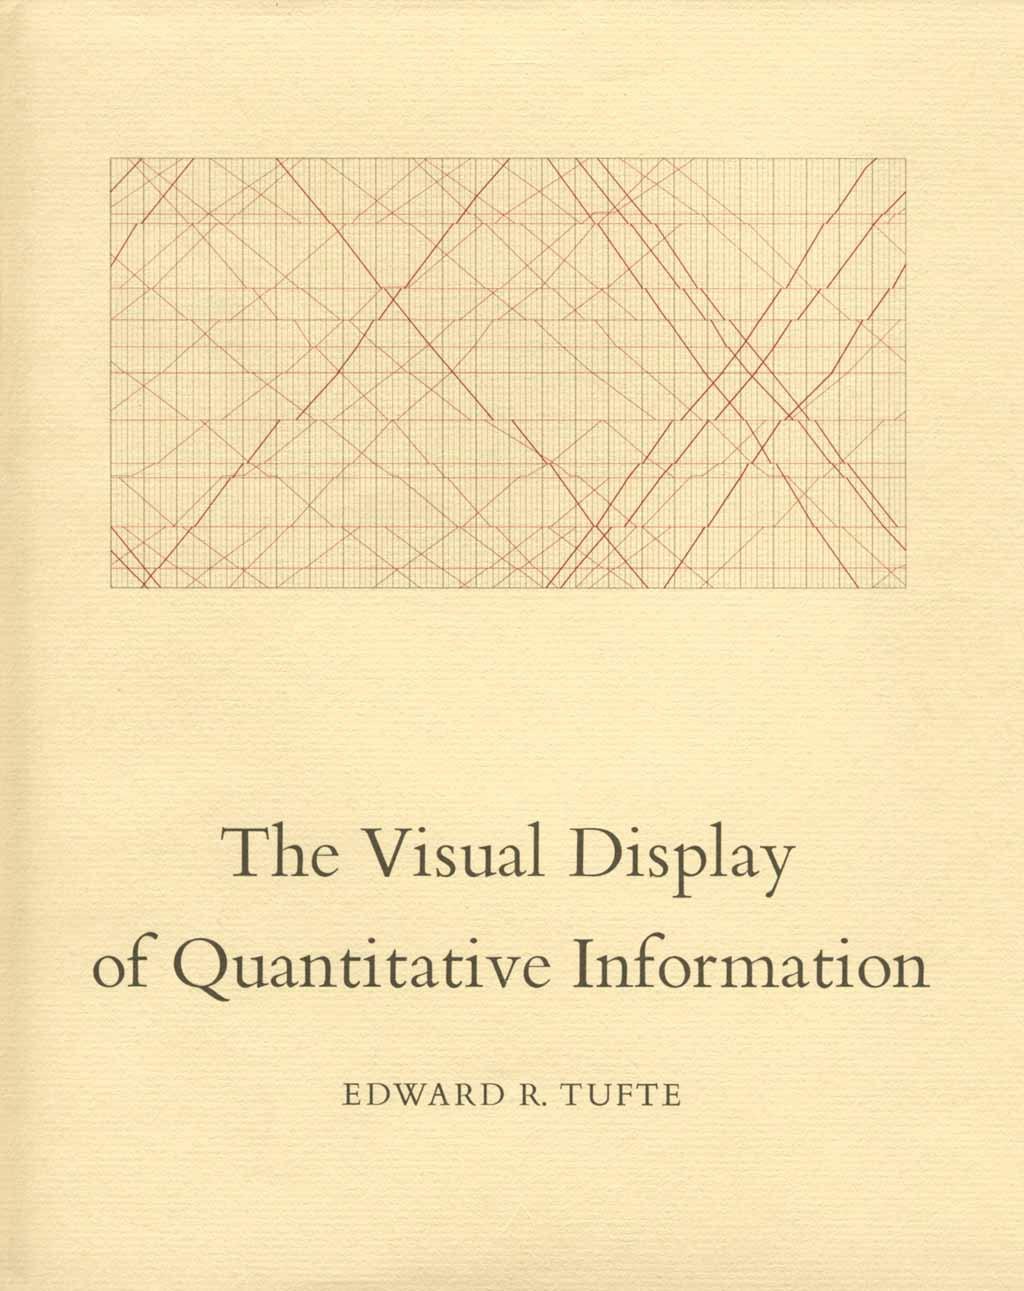 Edward Tufte publicou em seu livro formas de combinar rigor estatístico com